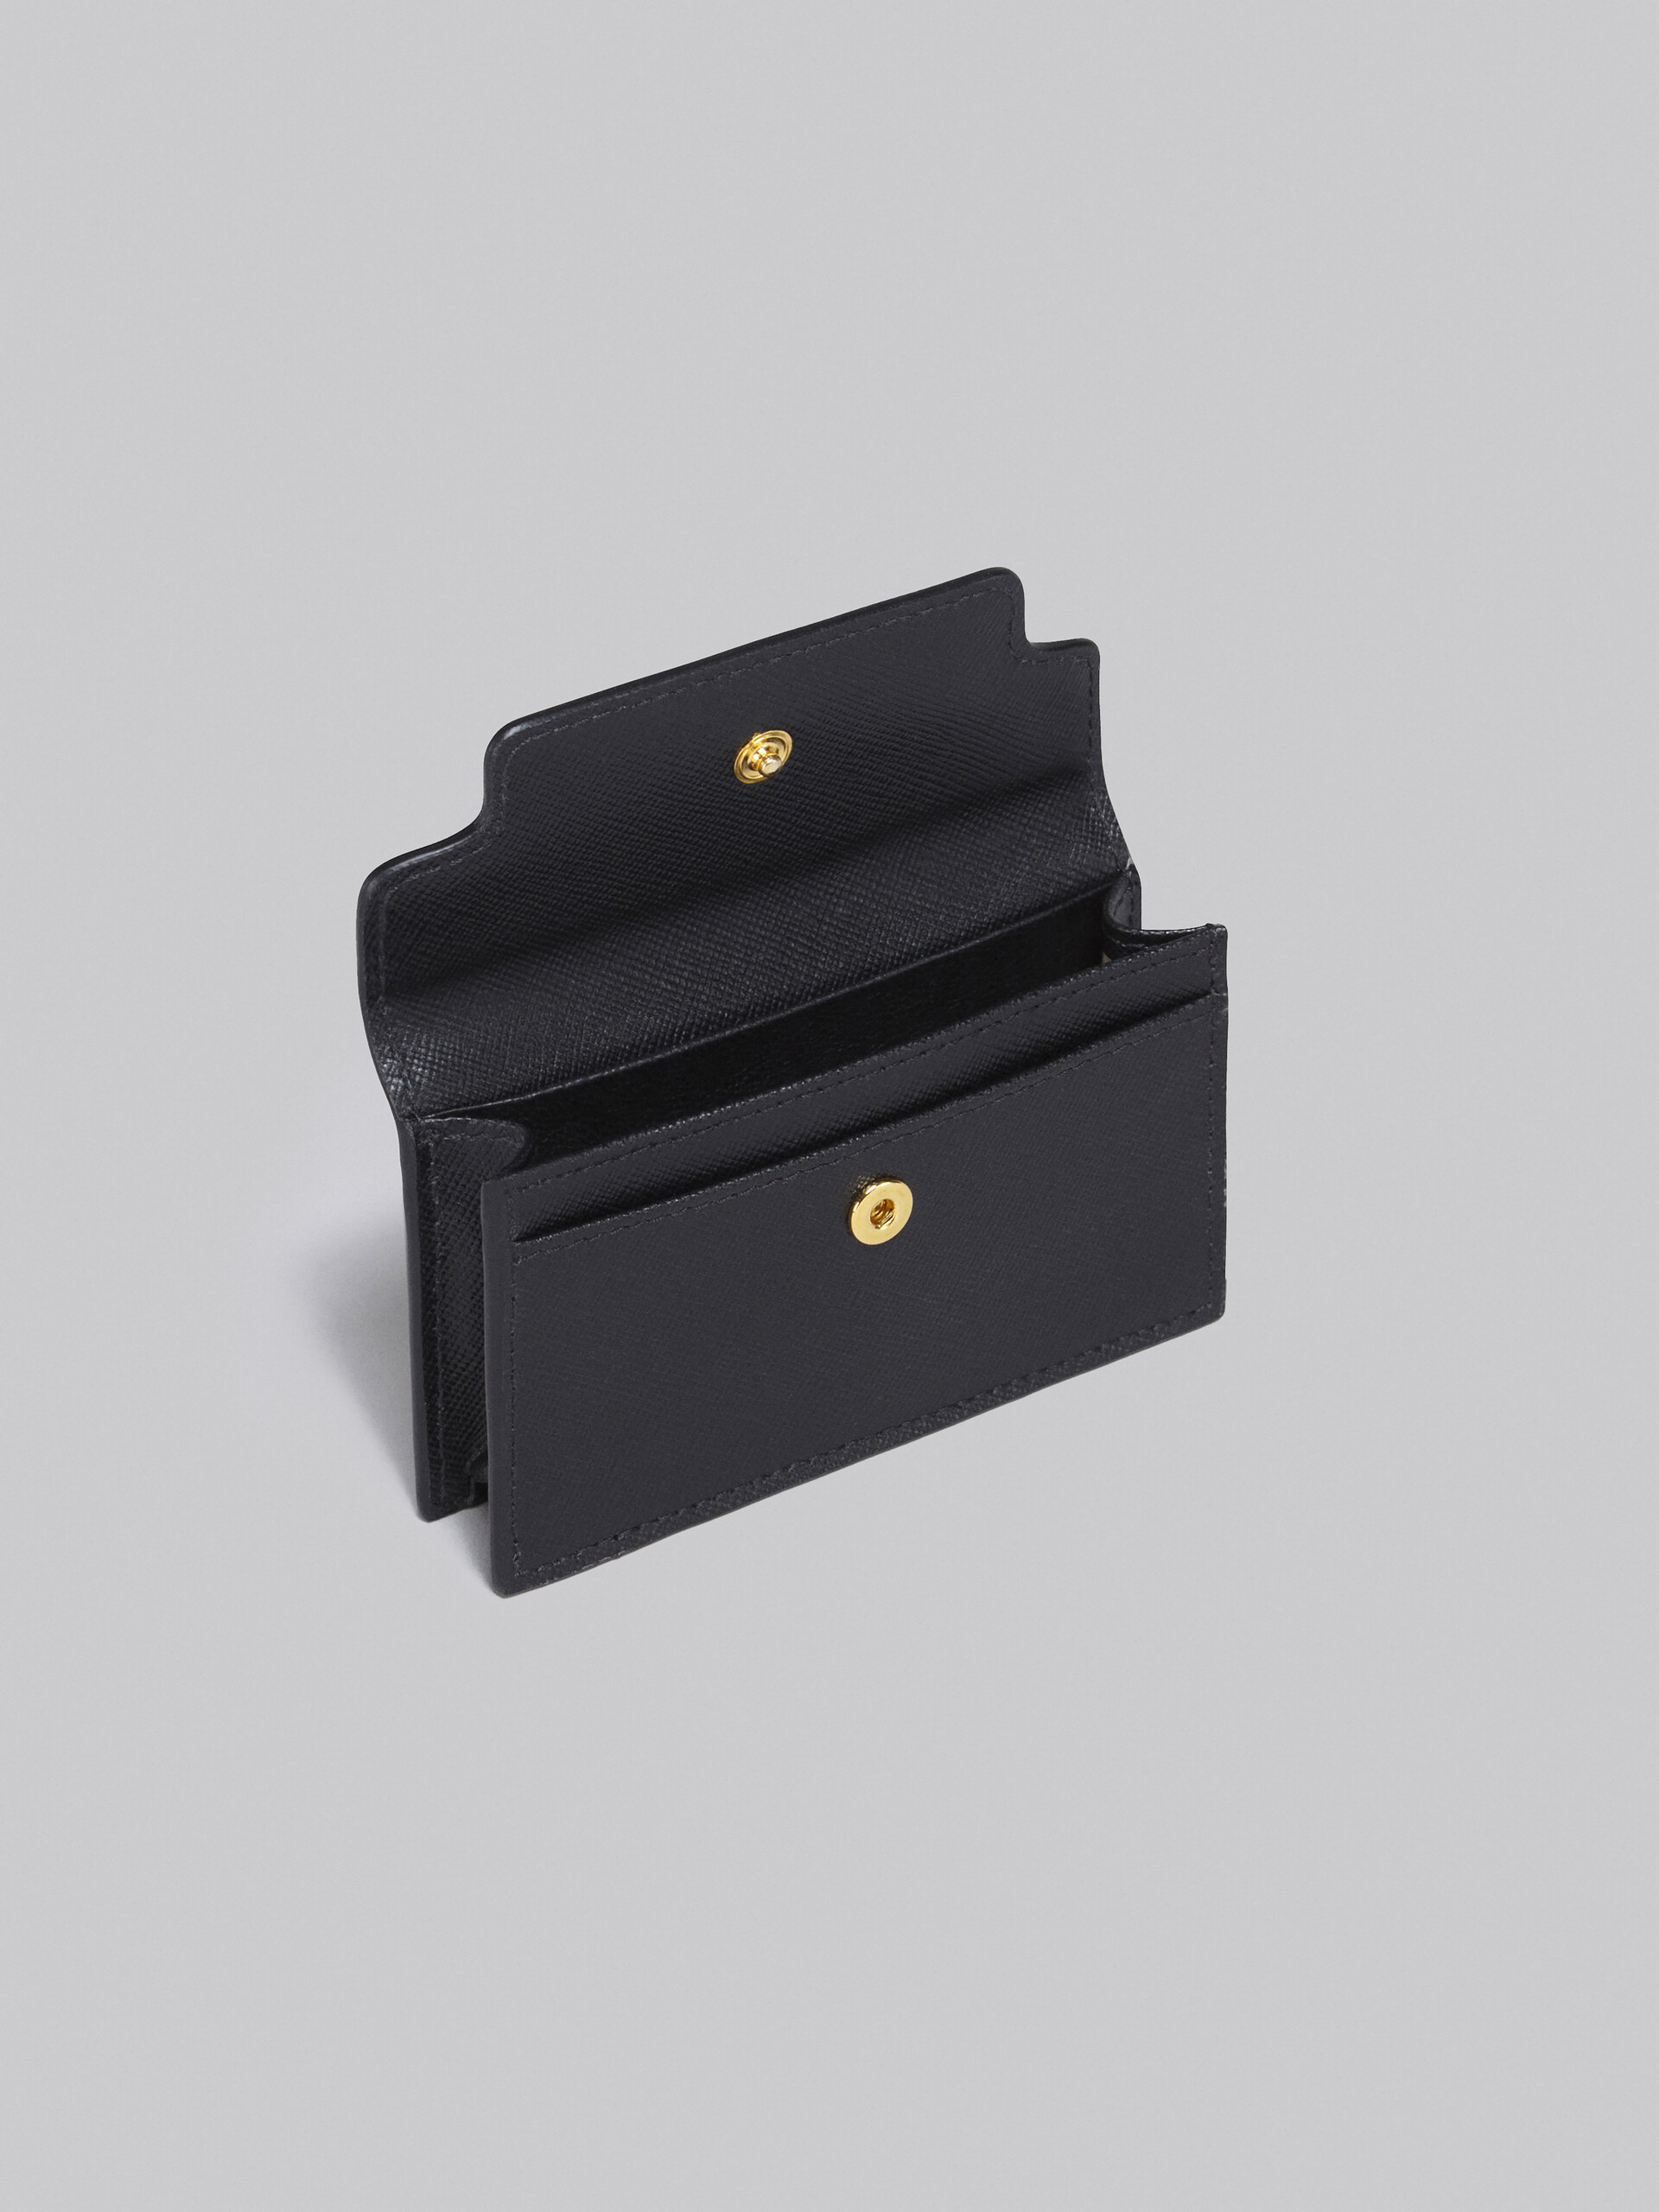 サフィアーノレザー ブラック ビジネスカードケース - 財布 - Image 2